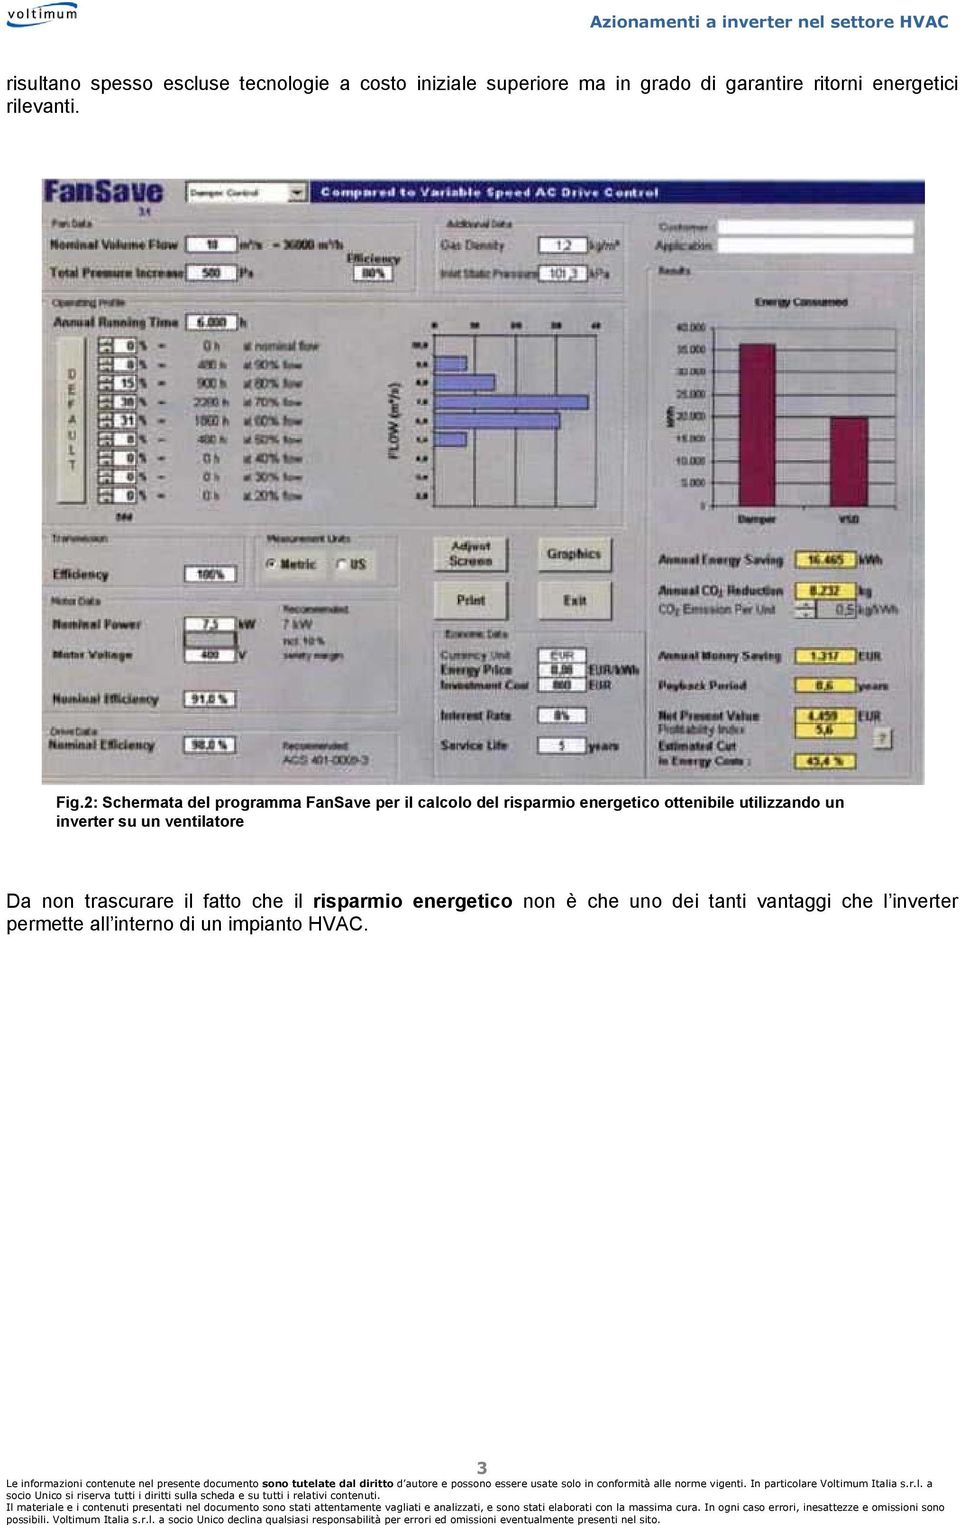 2: Schermata del programma FanSave per il calcolo del risparmio energetico ottenibile utilizzando